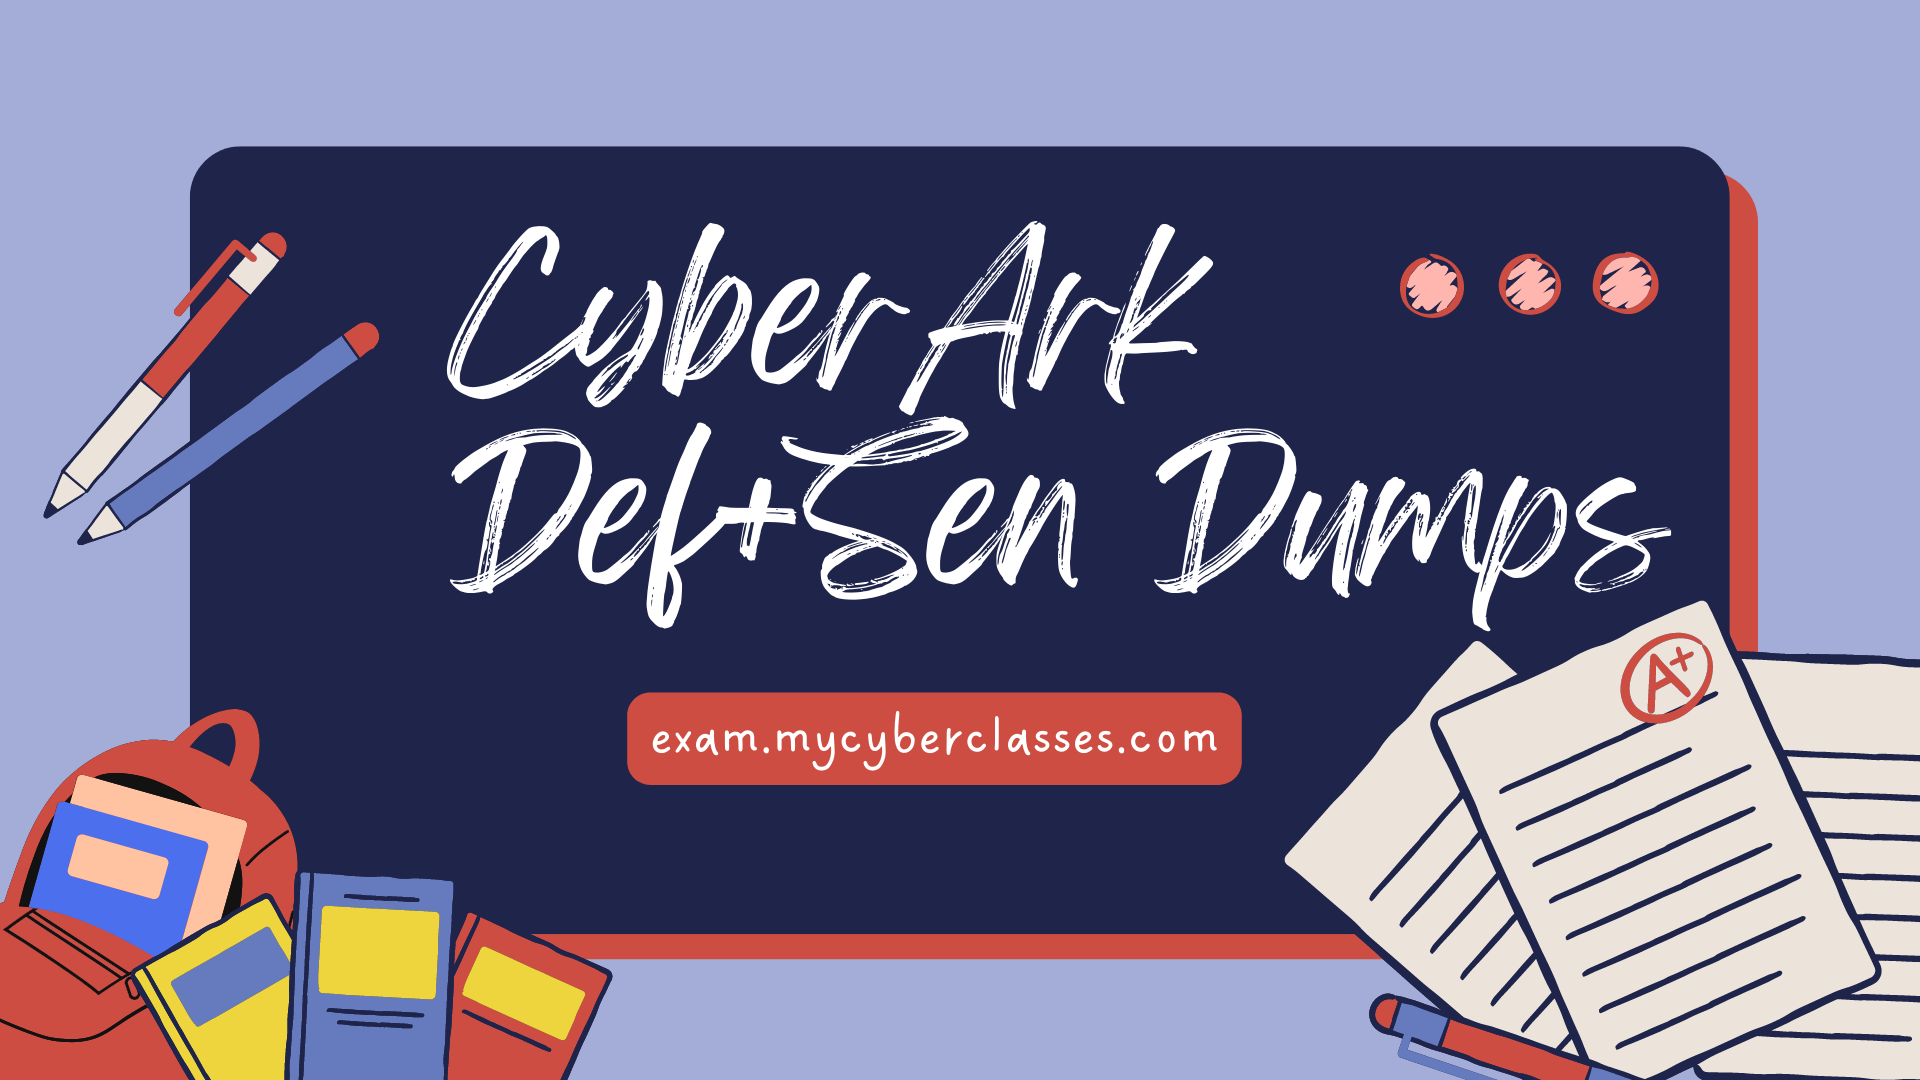 CyberArk Defender & Sentry Dumps